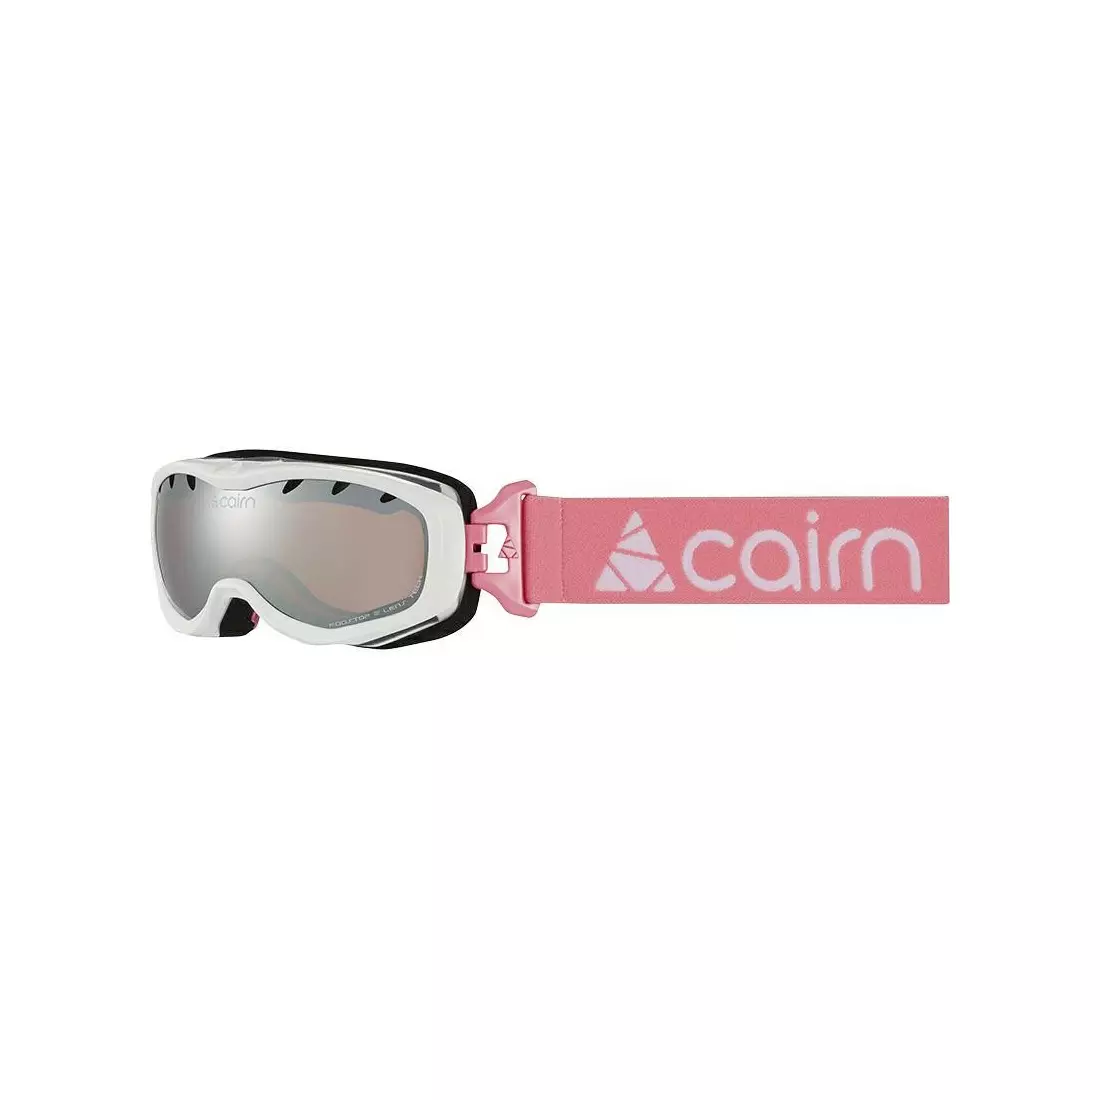 CAIRN dětské lyžařské/snowboardové brýle RUSH SPX3000 Shiny White Candy Pink 